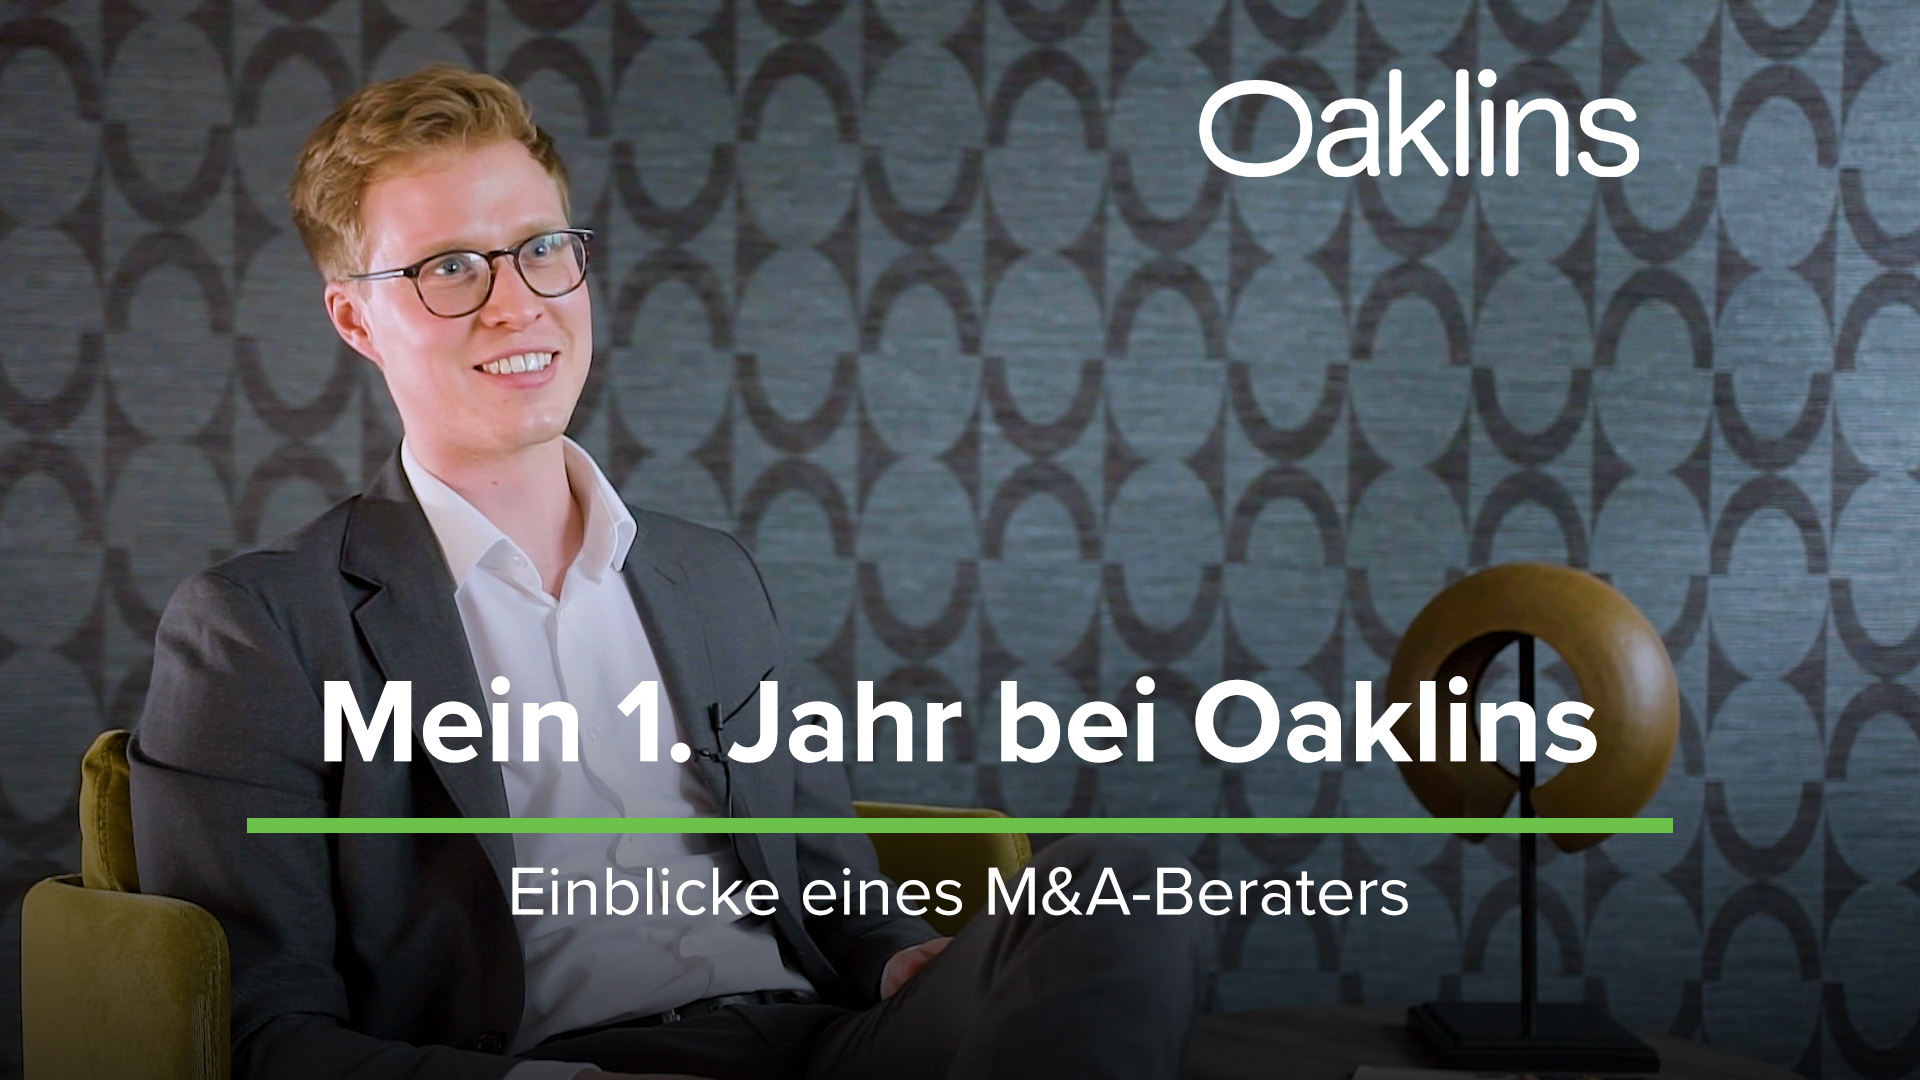 Oaklins Germany Karriere